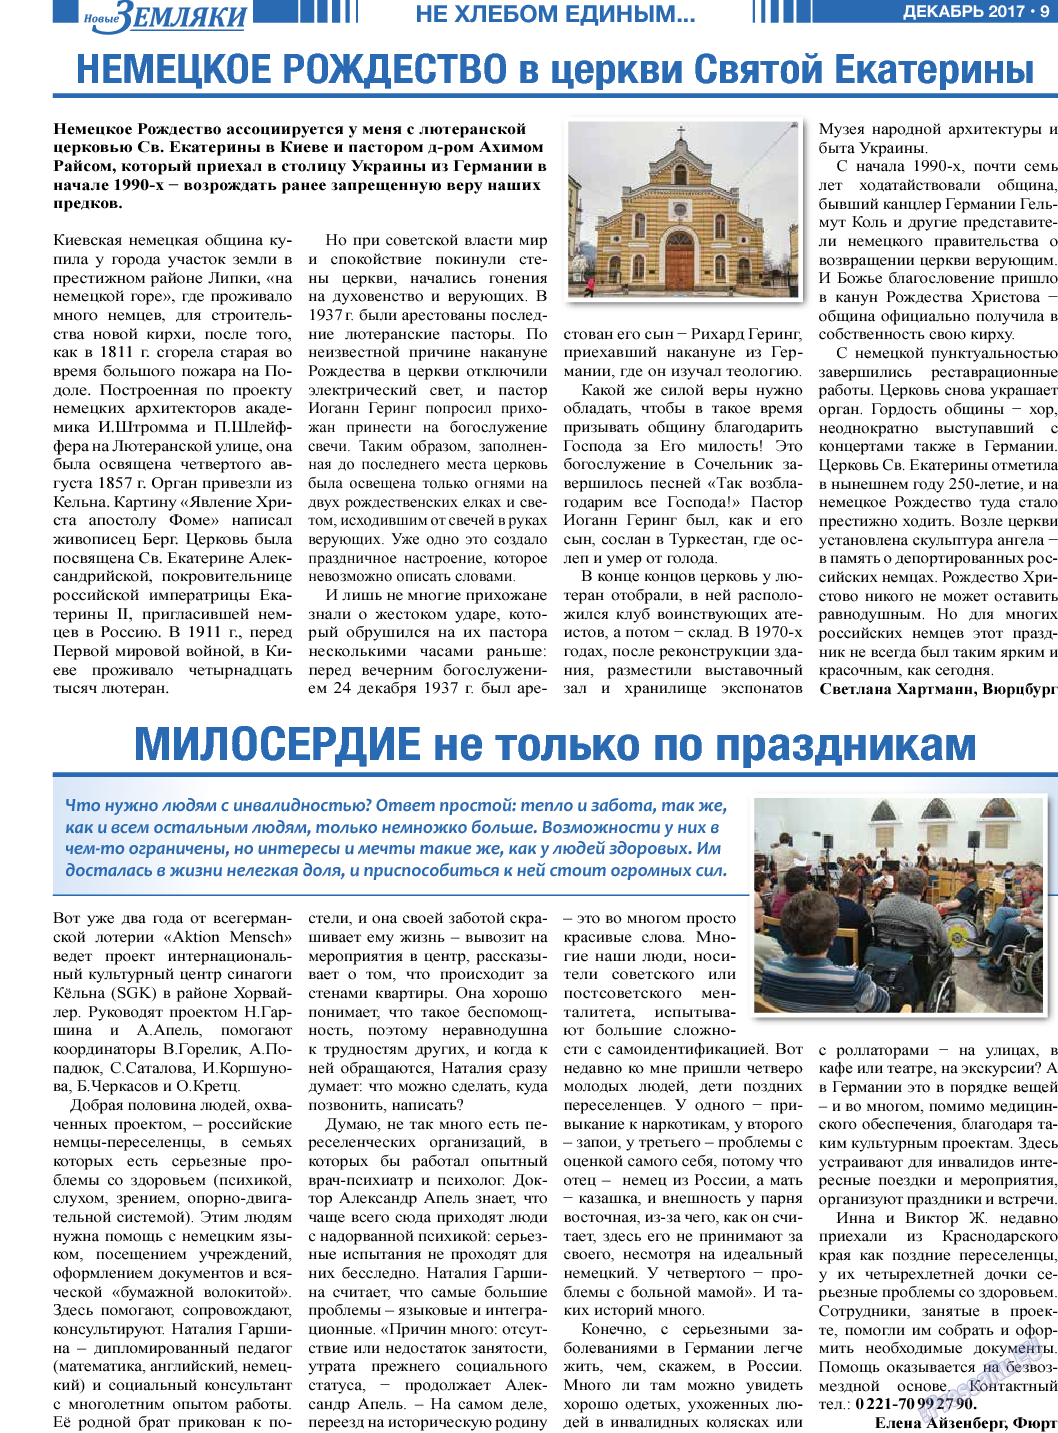 Новые Земляки (газета). 2017 год, номер 12, стр. 9